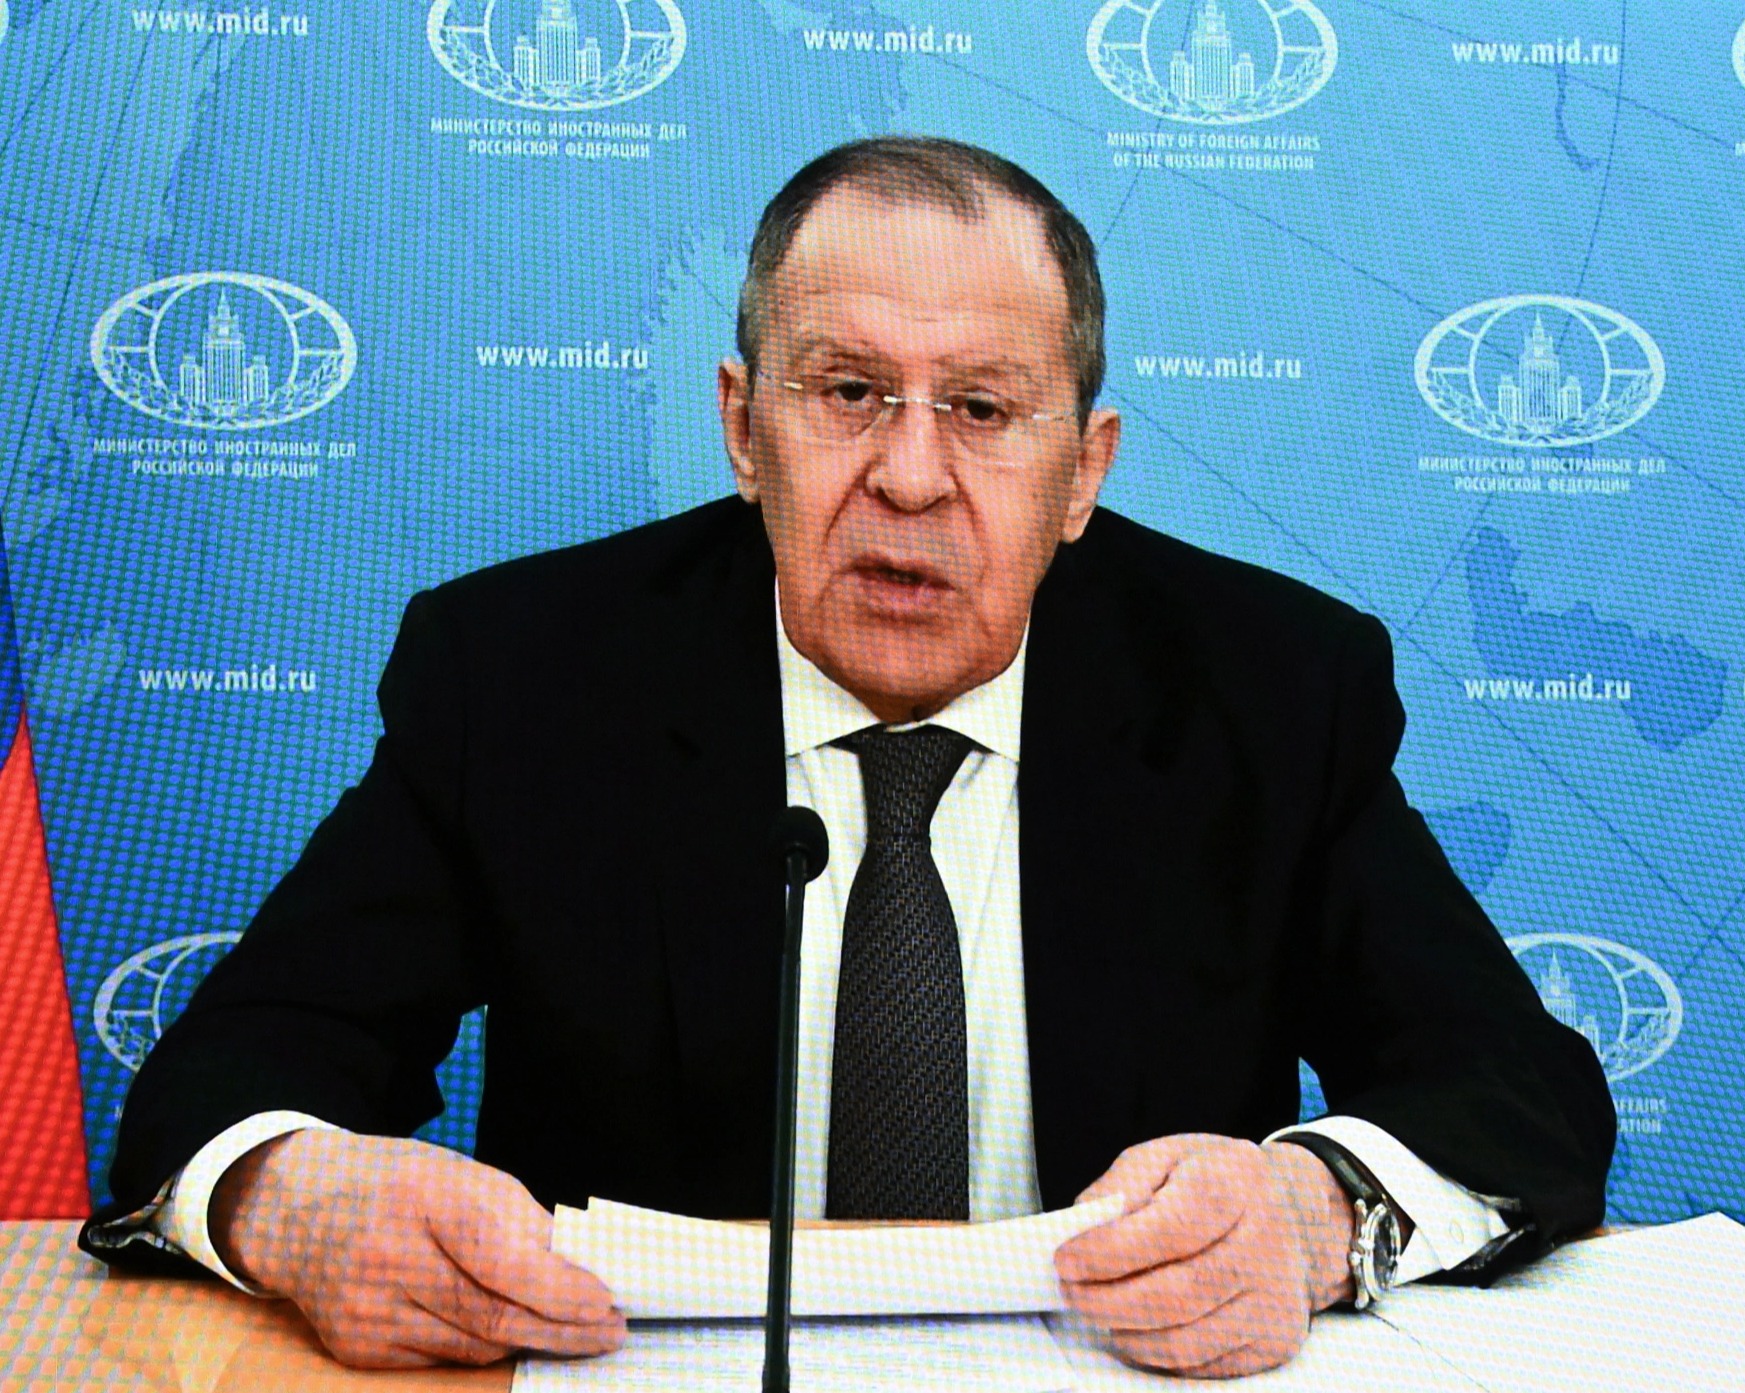 Sergey Lavrov hablando en la ONU ayer - en un discurso en el que los diplomáticos lo dejaron